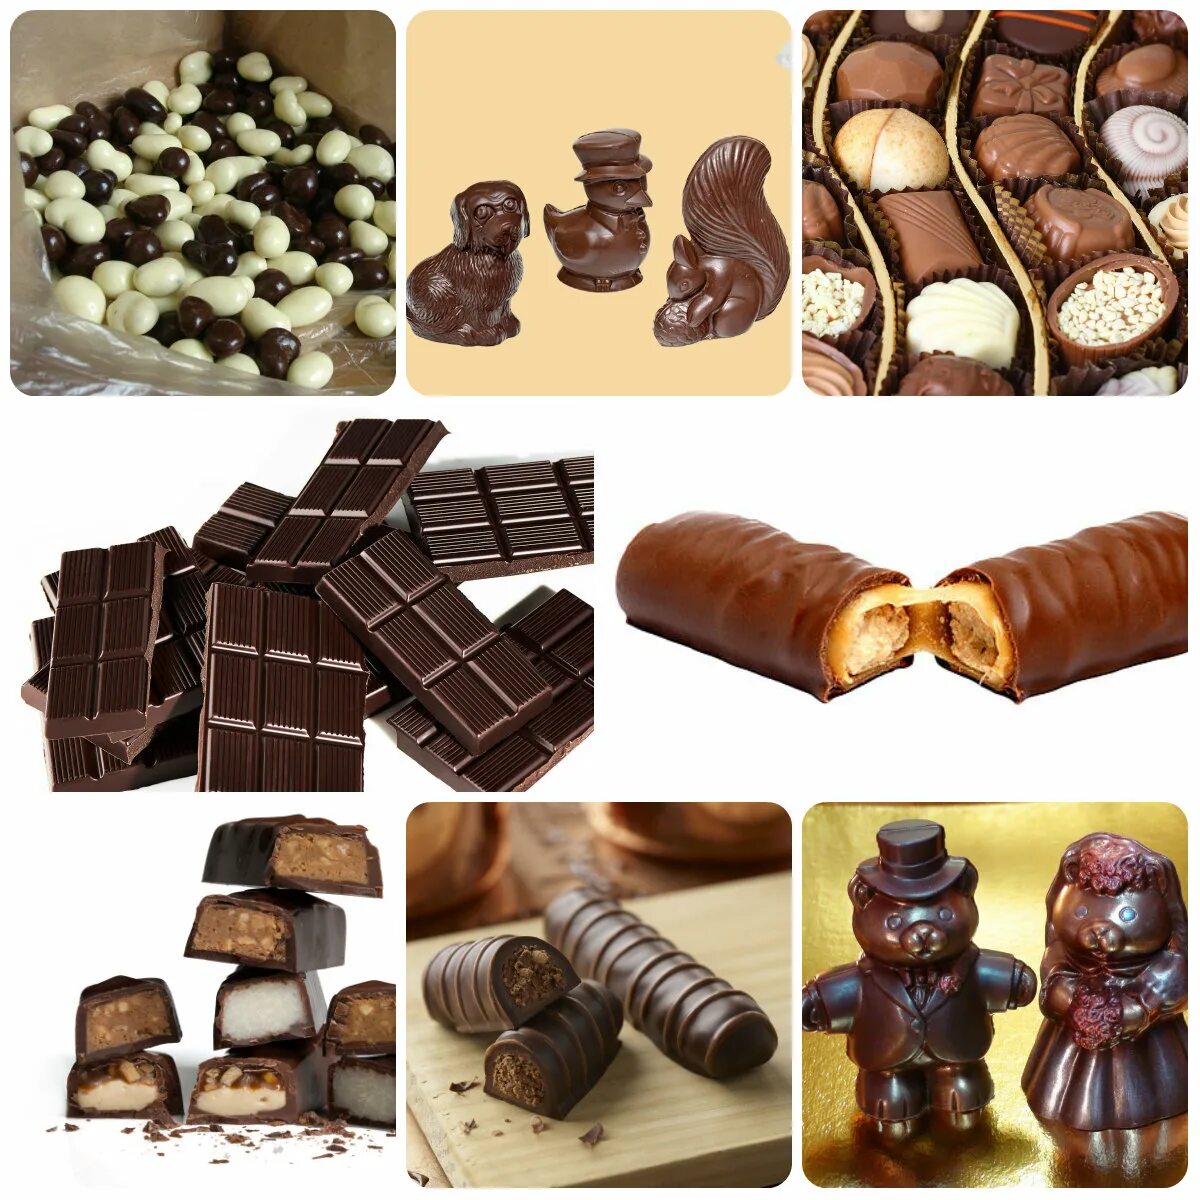 Шоколадка бывает. Шоколадные изделия. Шоколадные конфеты ассортимент. Разнообразие шоколада. Разные шоколадки.